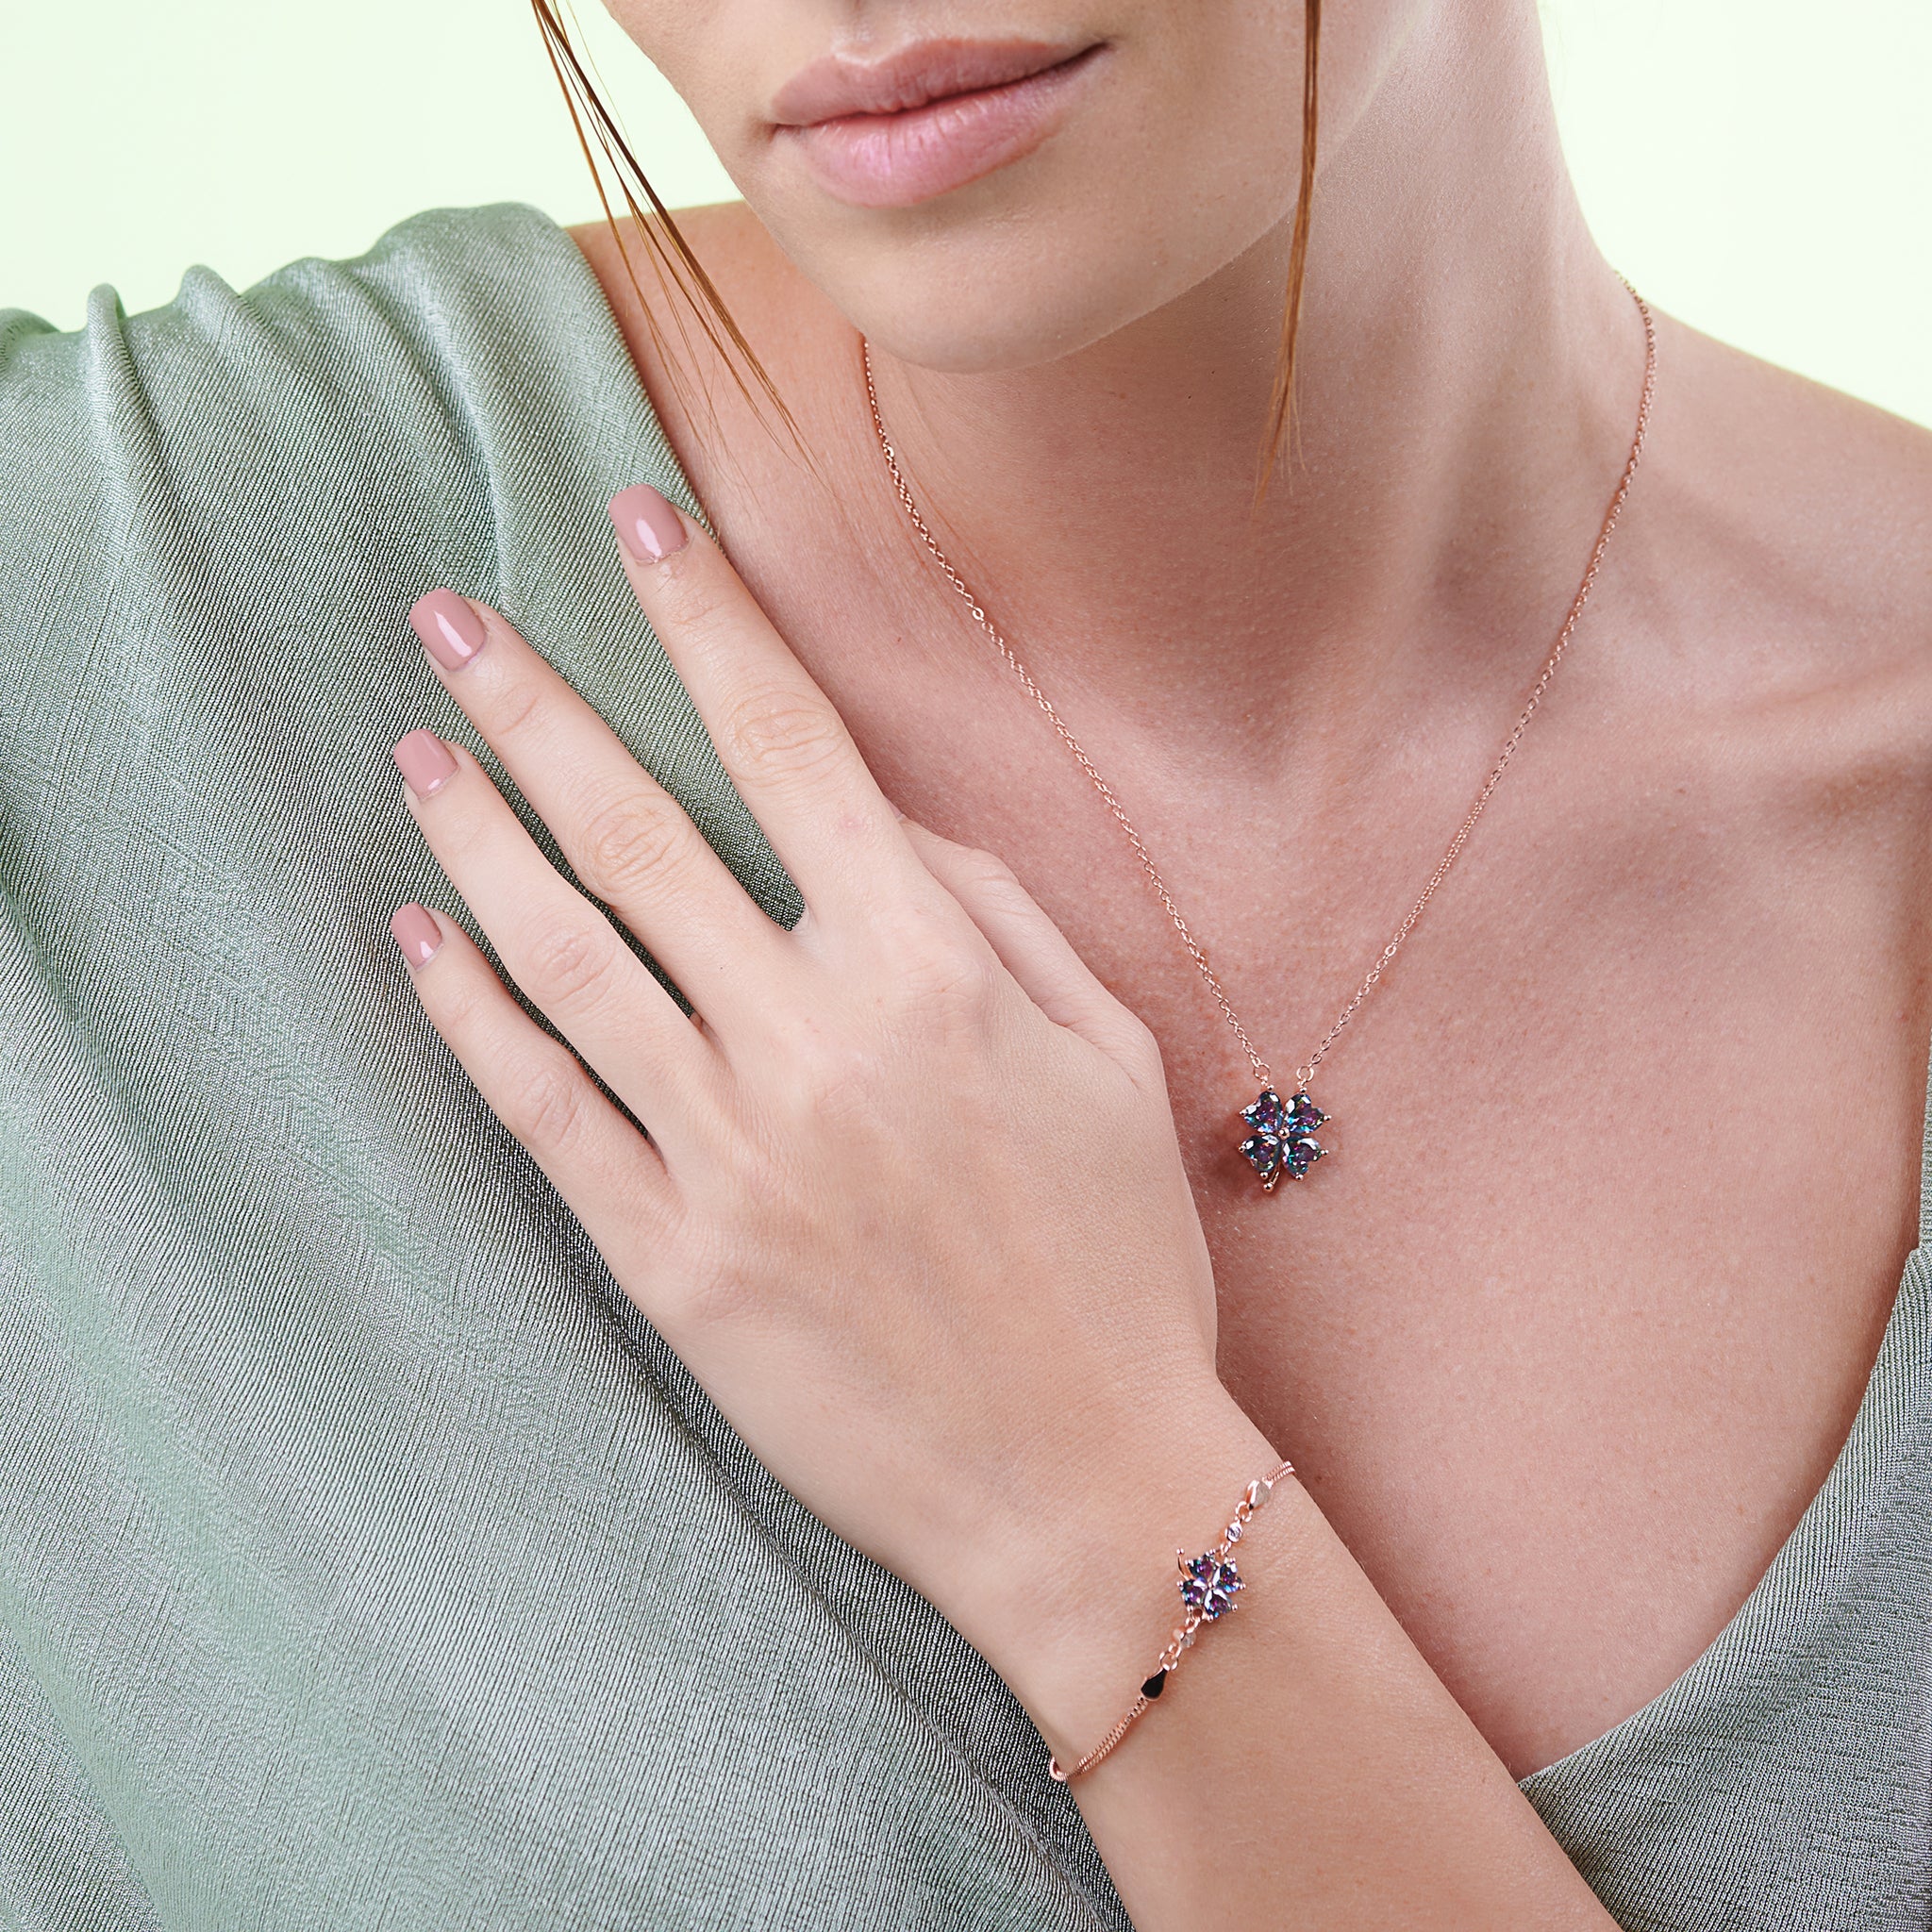 Mystic topaz stone clover necklace & Bracelet Set